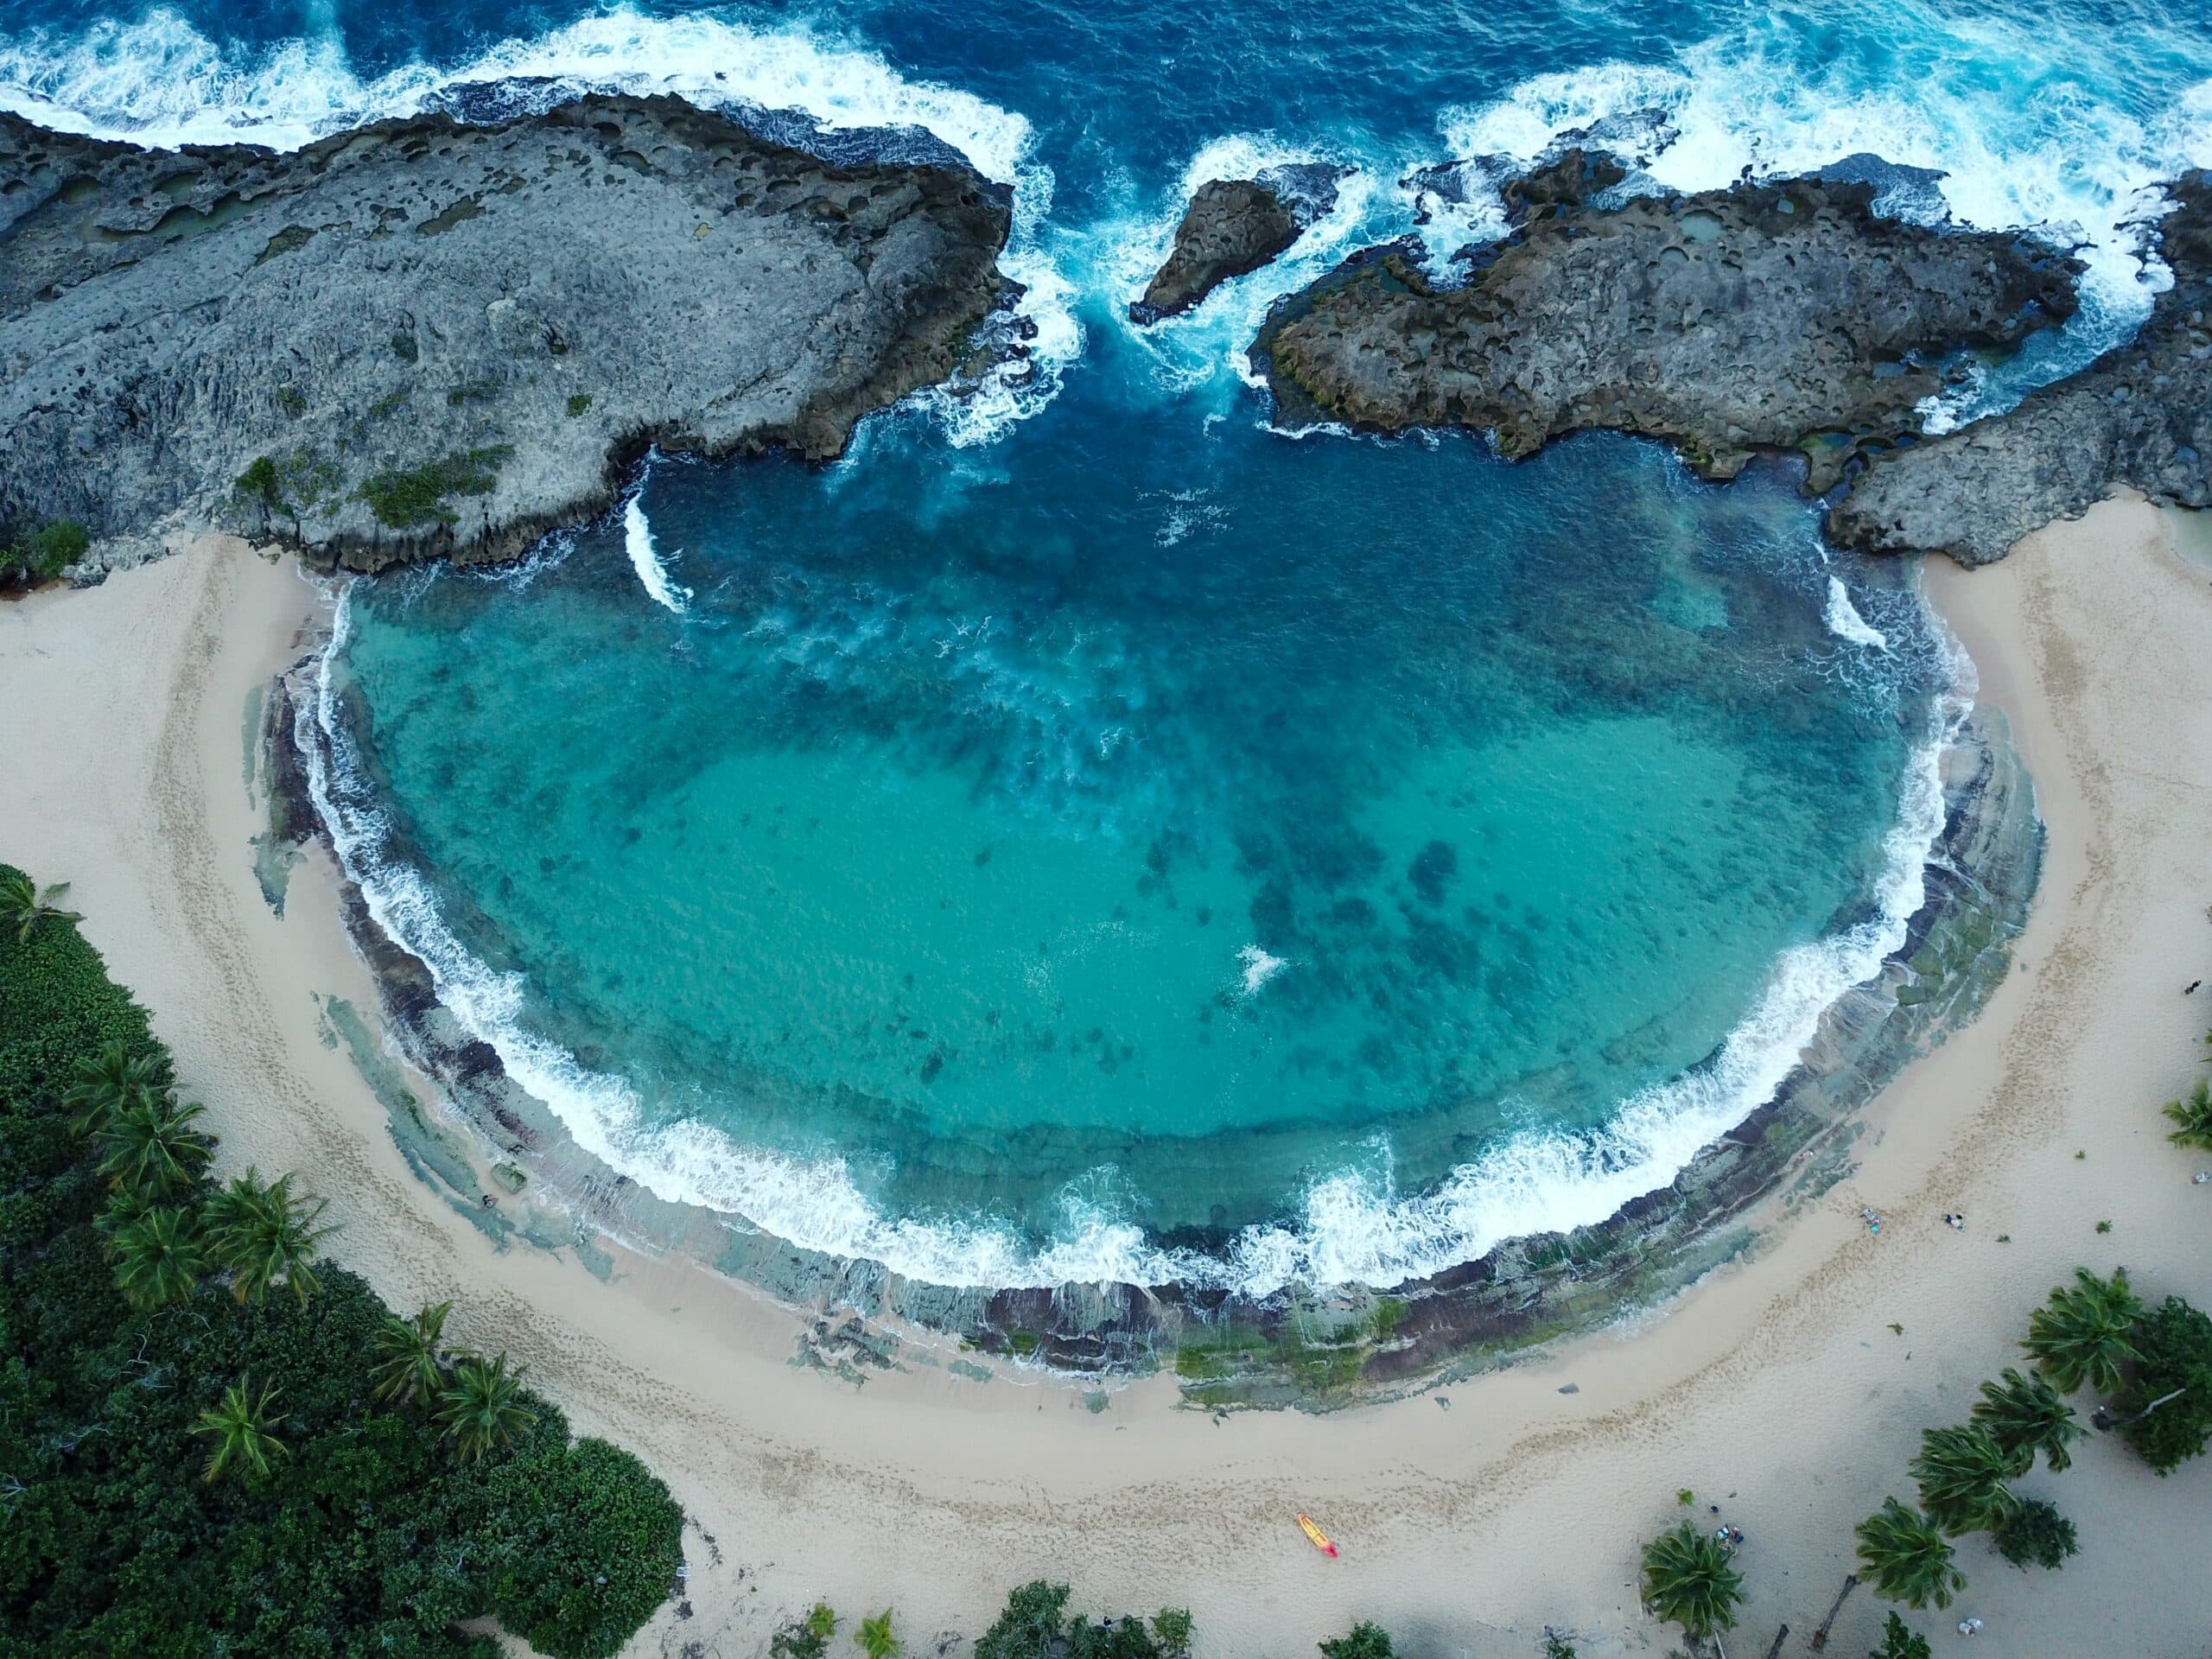 Vista de cima da Praia Mar Chiquita,  Porto Rico, com mar azul turquesa e areias brancas. - Representa seguro viagem para Porto Rico.